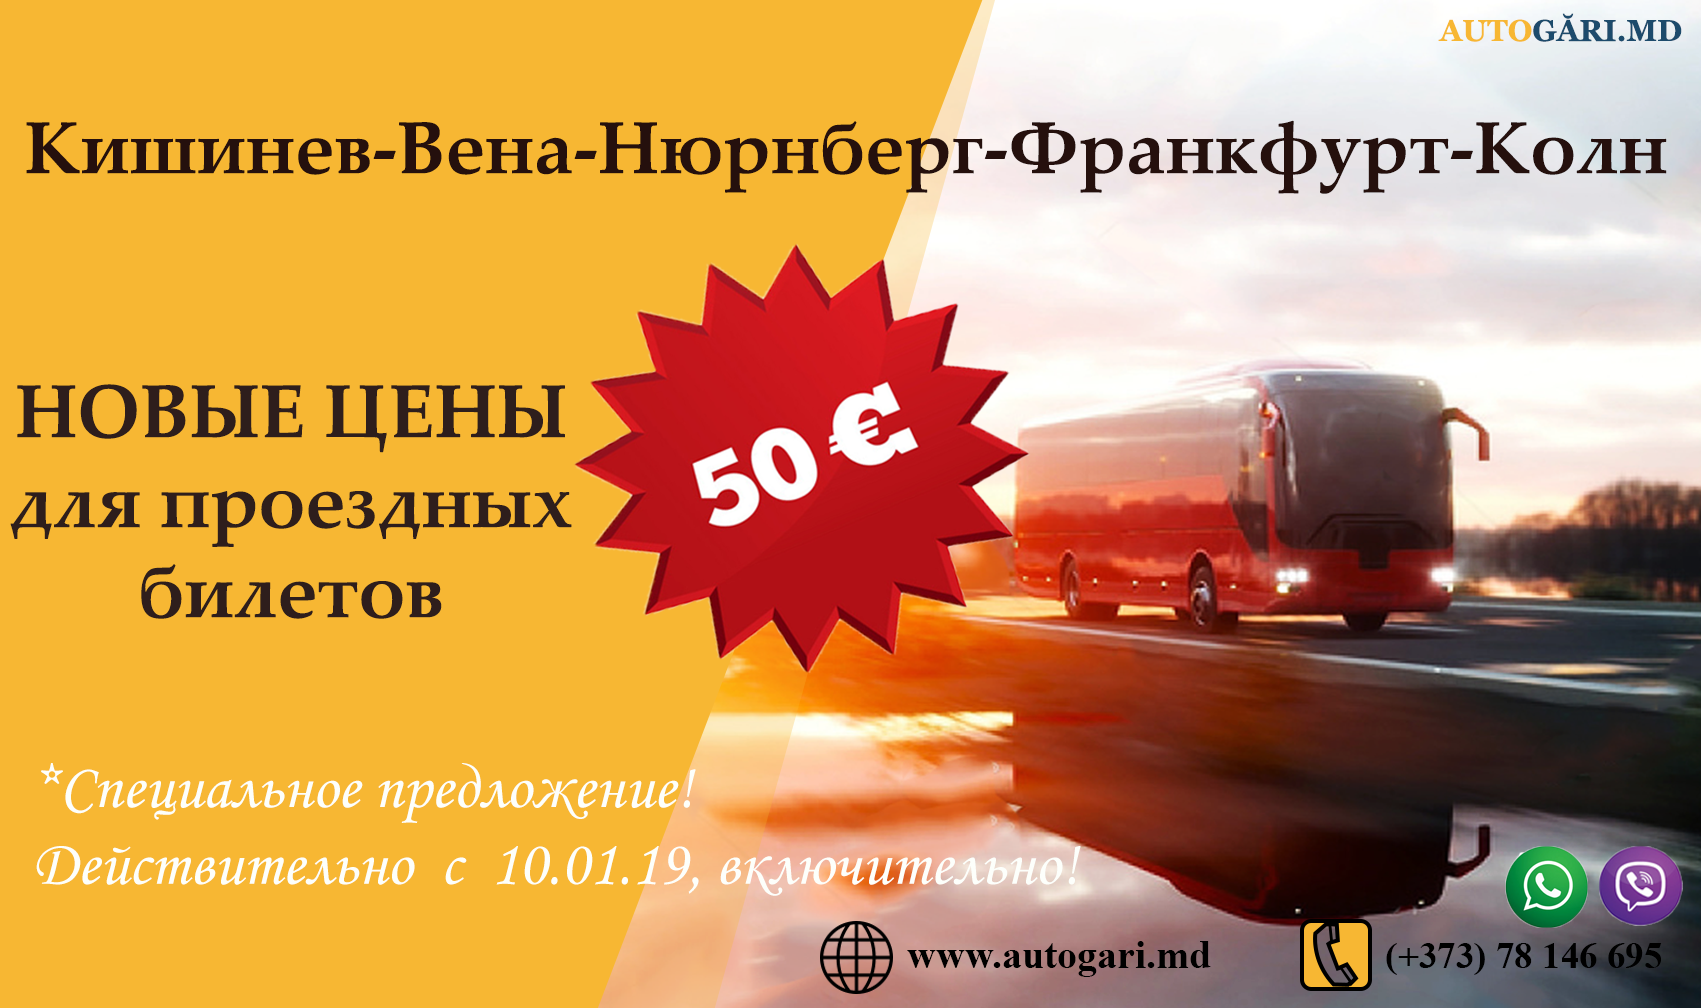 50 EURO blog ru